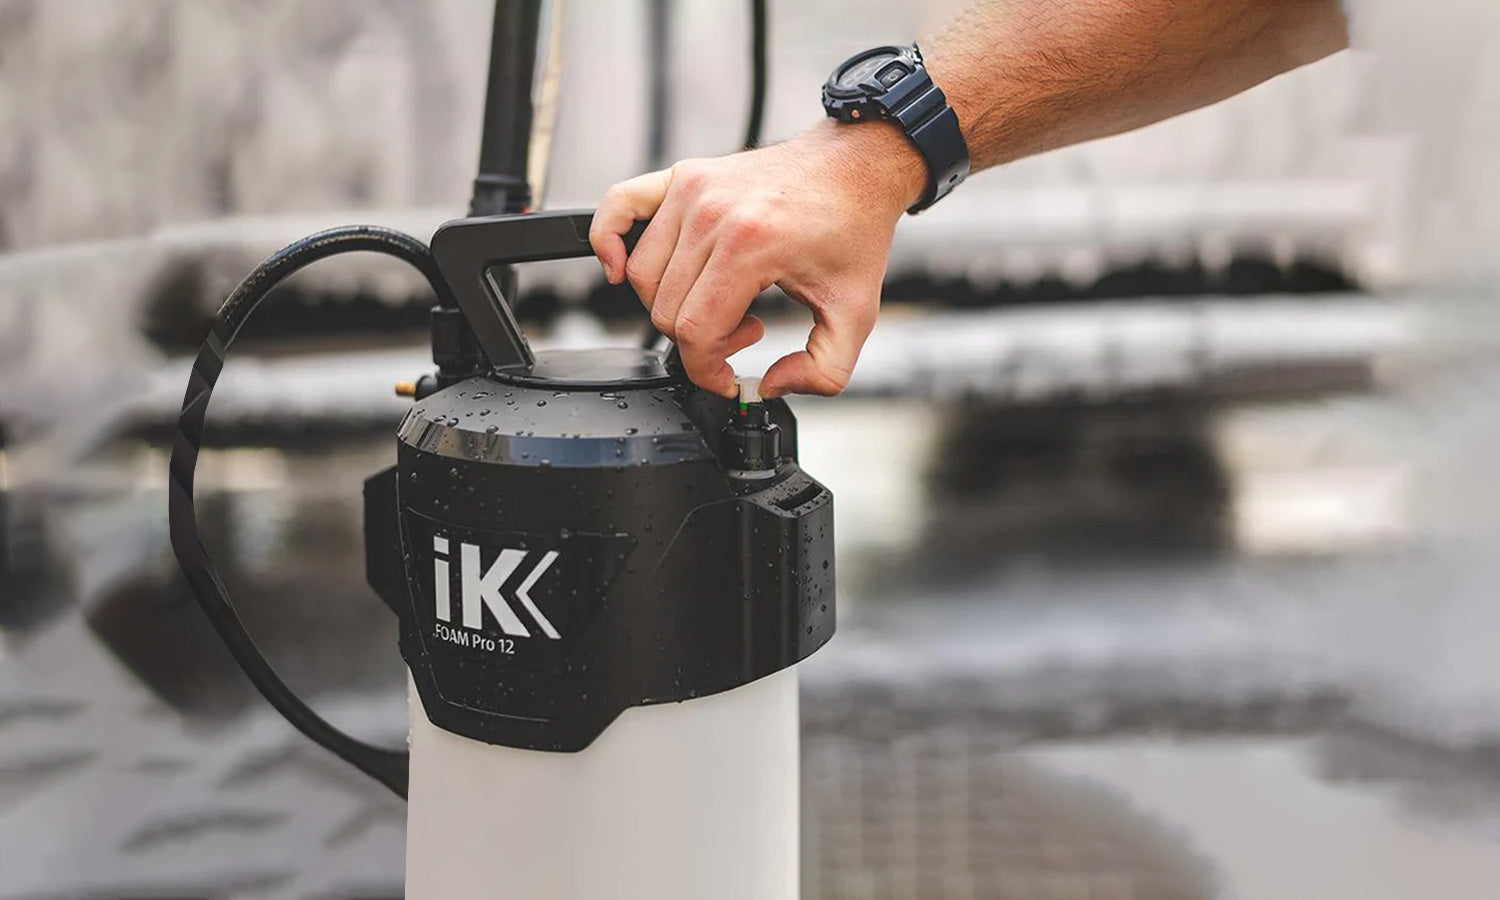 IK FOAM Pro 2 Professional Sprayer